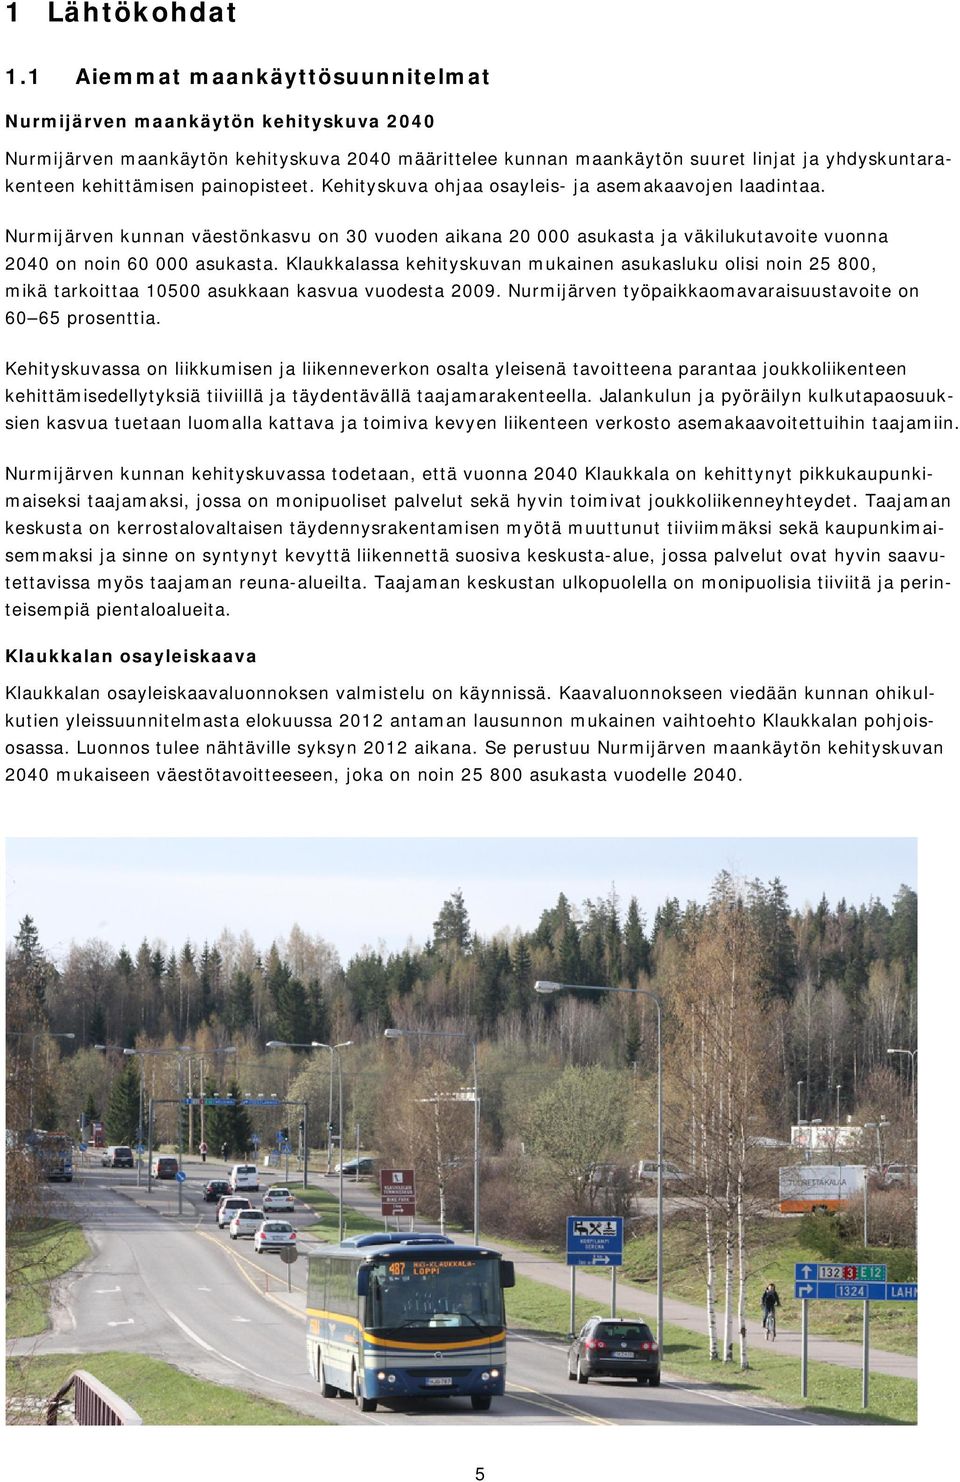 painopisteet. Kehityskuva ohjaa osayleis- ja asemakaavojen laadintaa. Nurmijärven kunnan väestönkasvu on 30 vuoden aikana 20 000 asukasta ja väkilukutavoite vuonna 2040 on noin 60 000 asukasta.